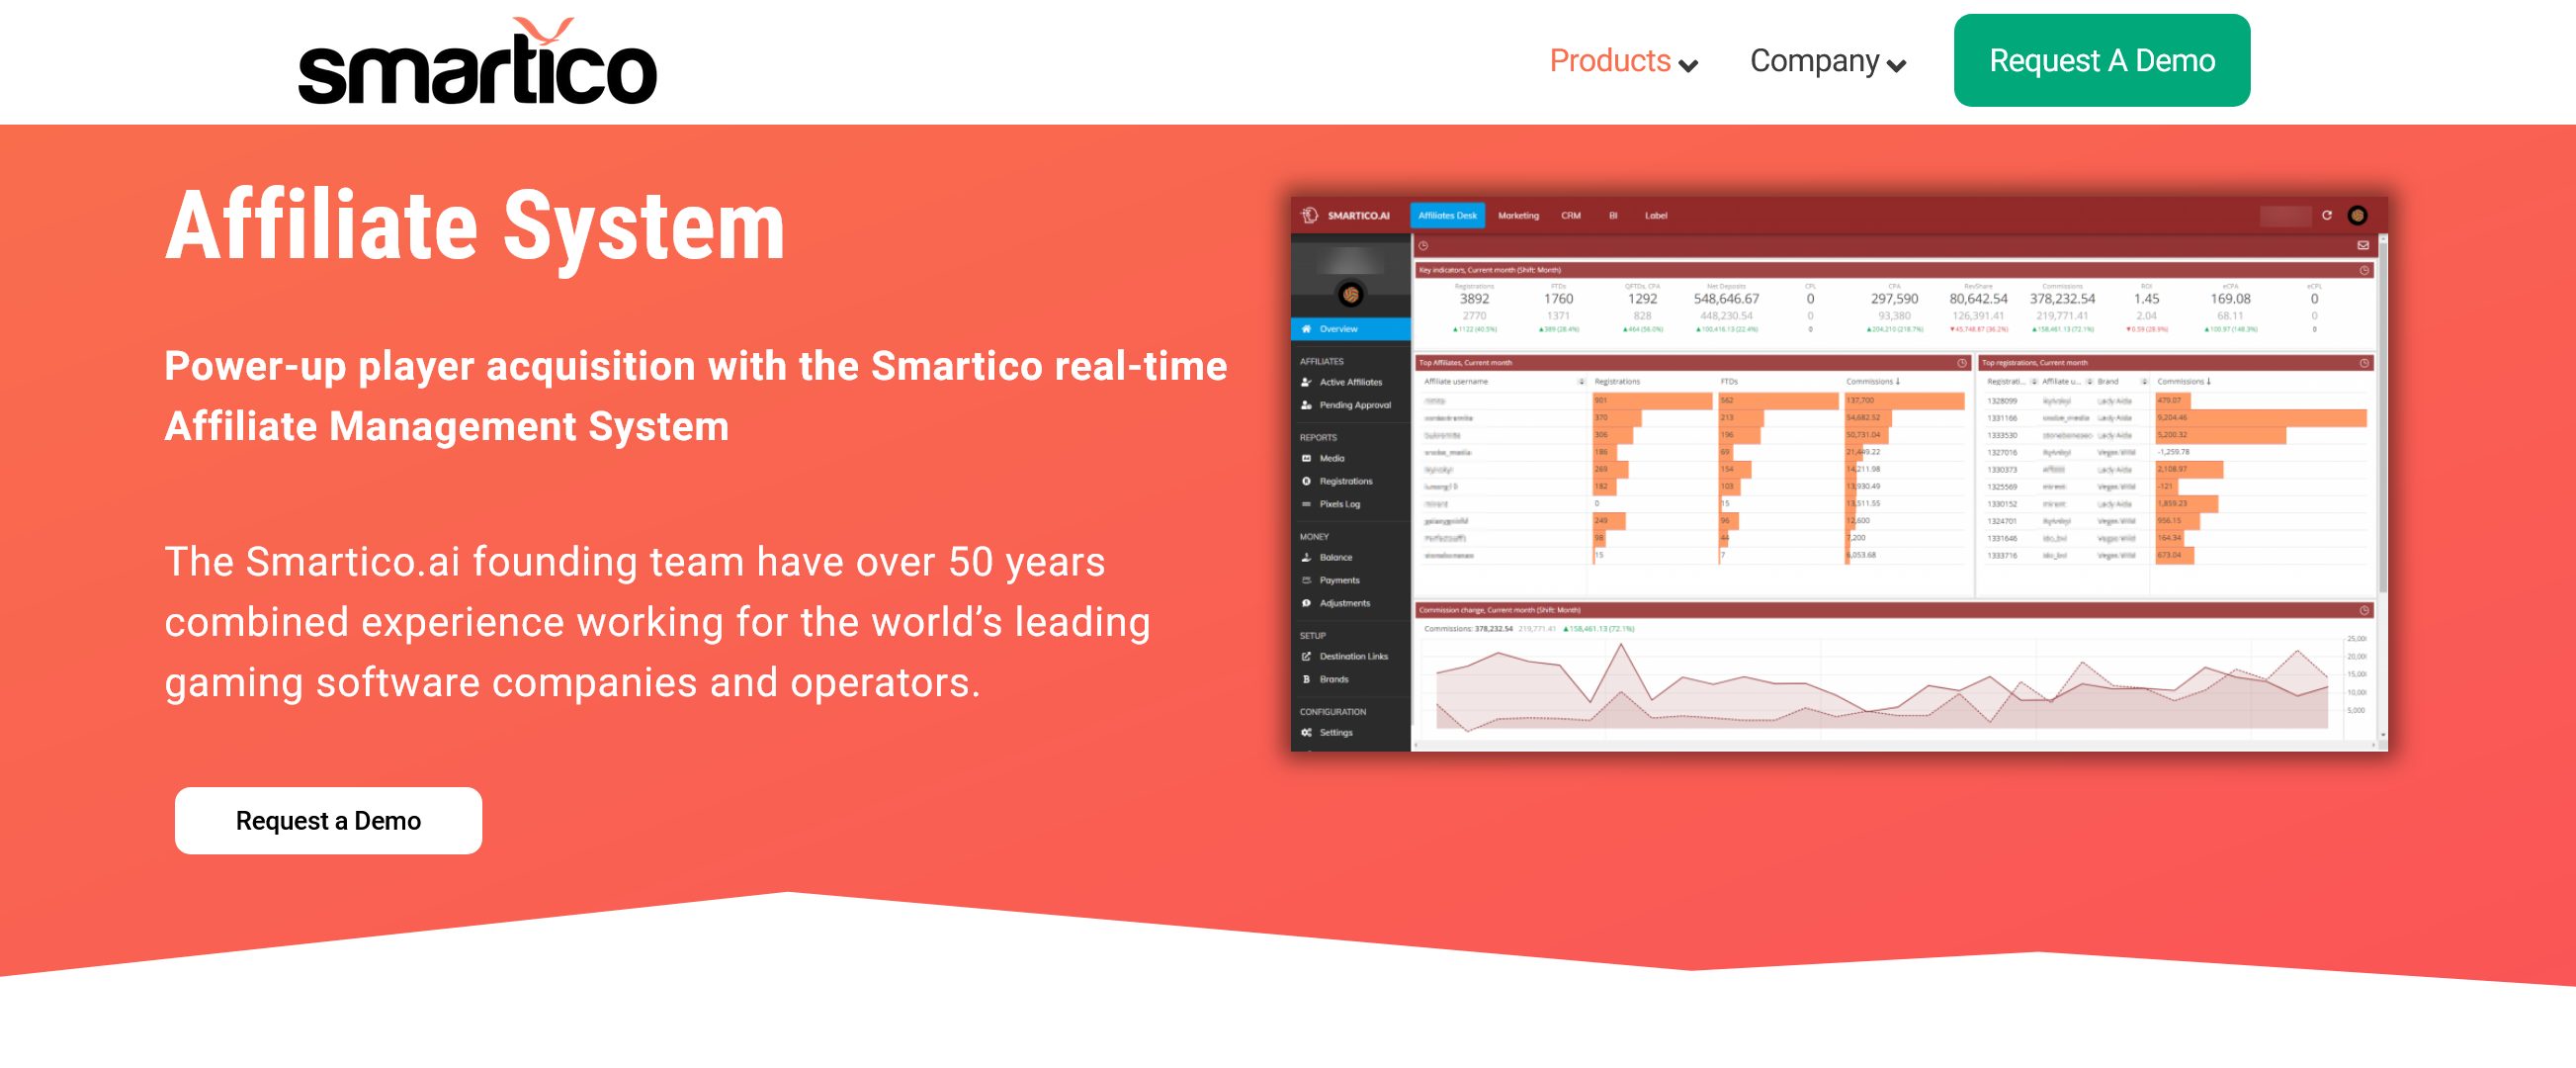 igaming web siteleri ve markaları için satış ortağı pazarlama yazılımı - Smartico